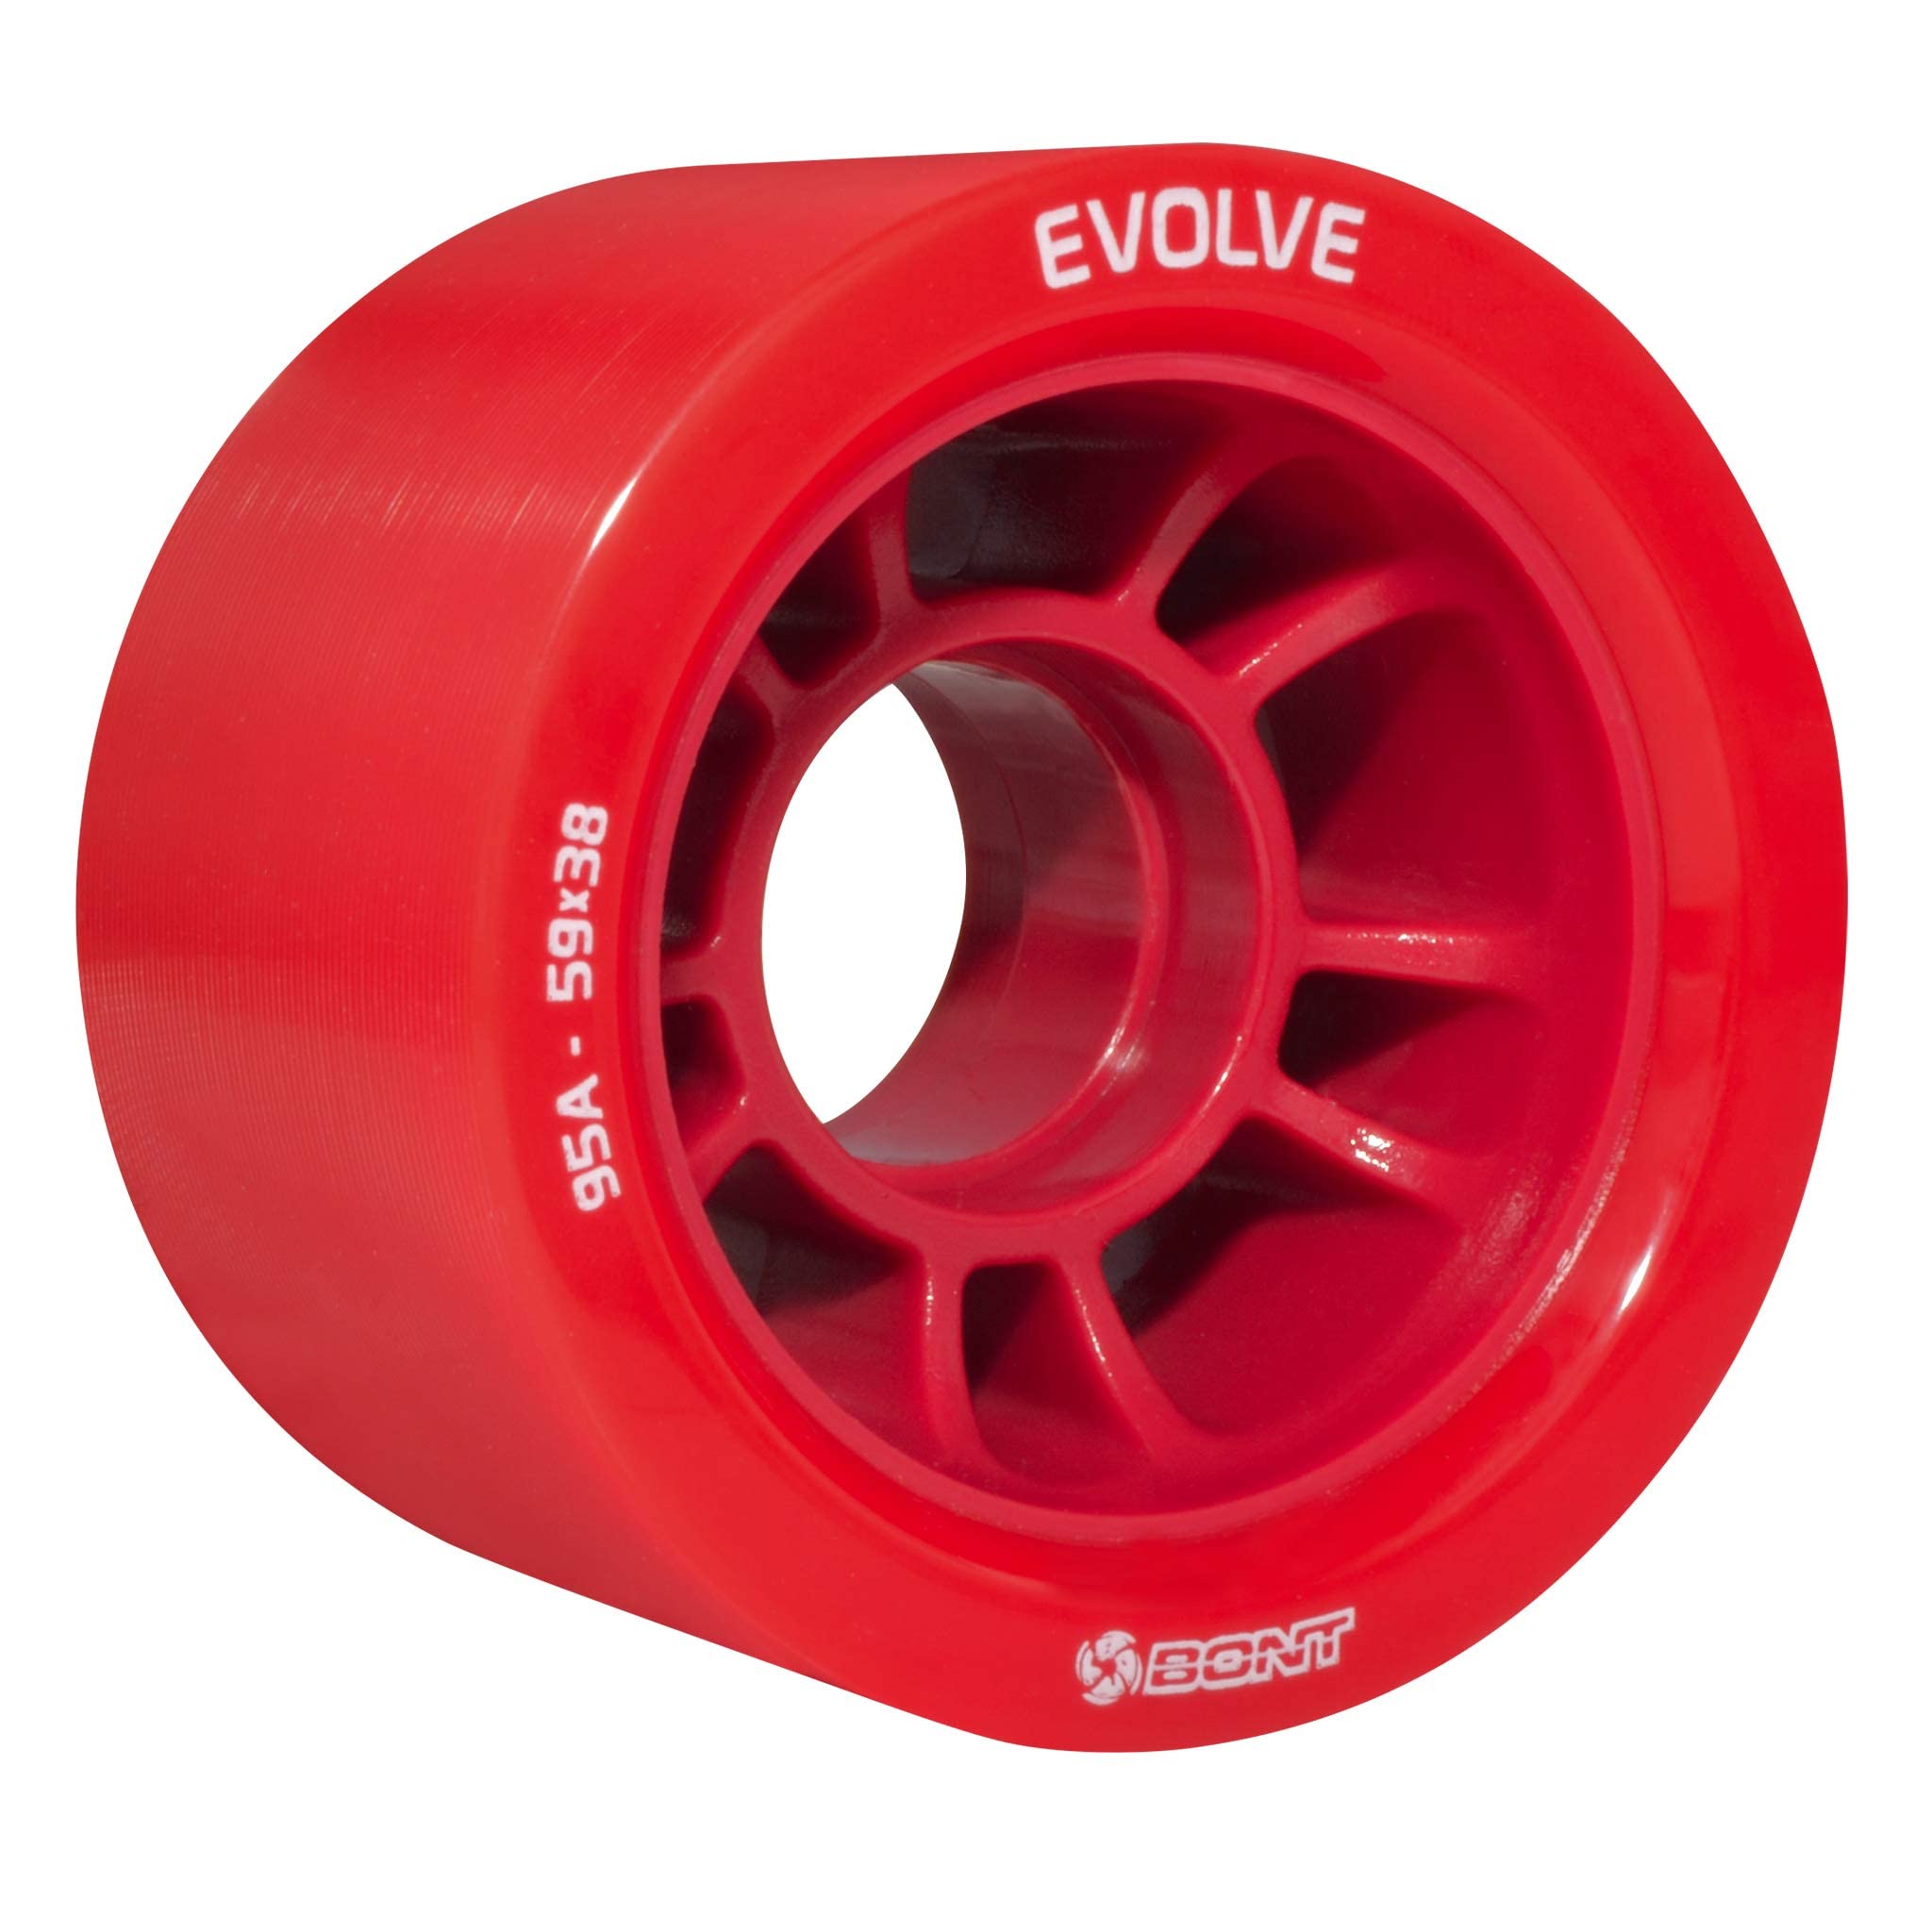 Bont Skates - Evolve Roller Derby Skate Wheel - Indoor Roller Skate Wheels - Rollerskate Wheels - 88A 92A 95A 98A - Red Black Blue Purple (Blue 88A - Set of 4)